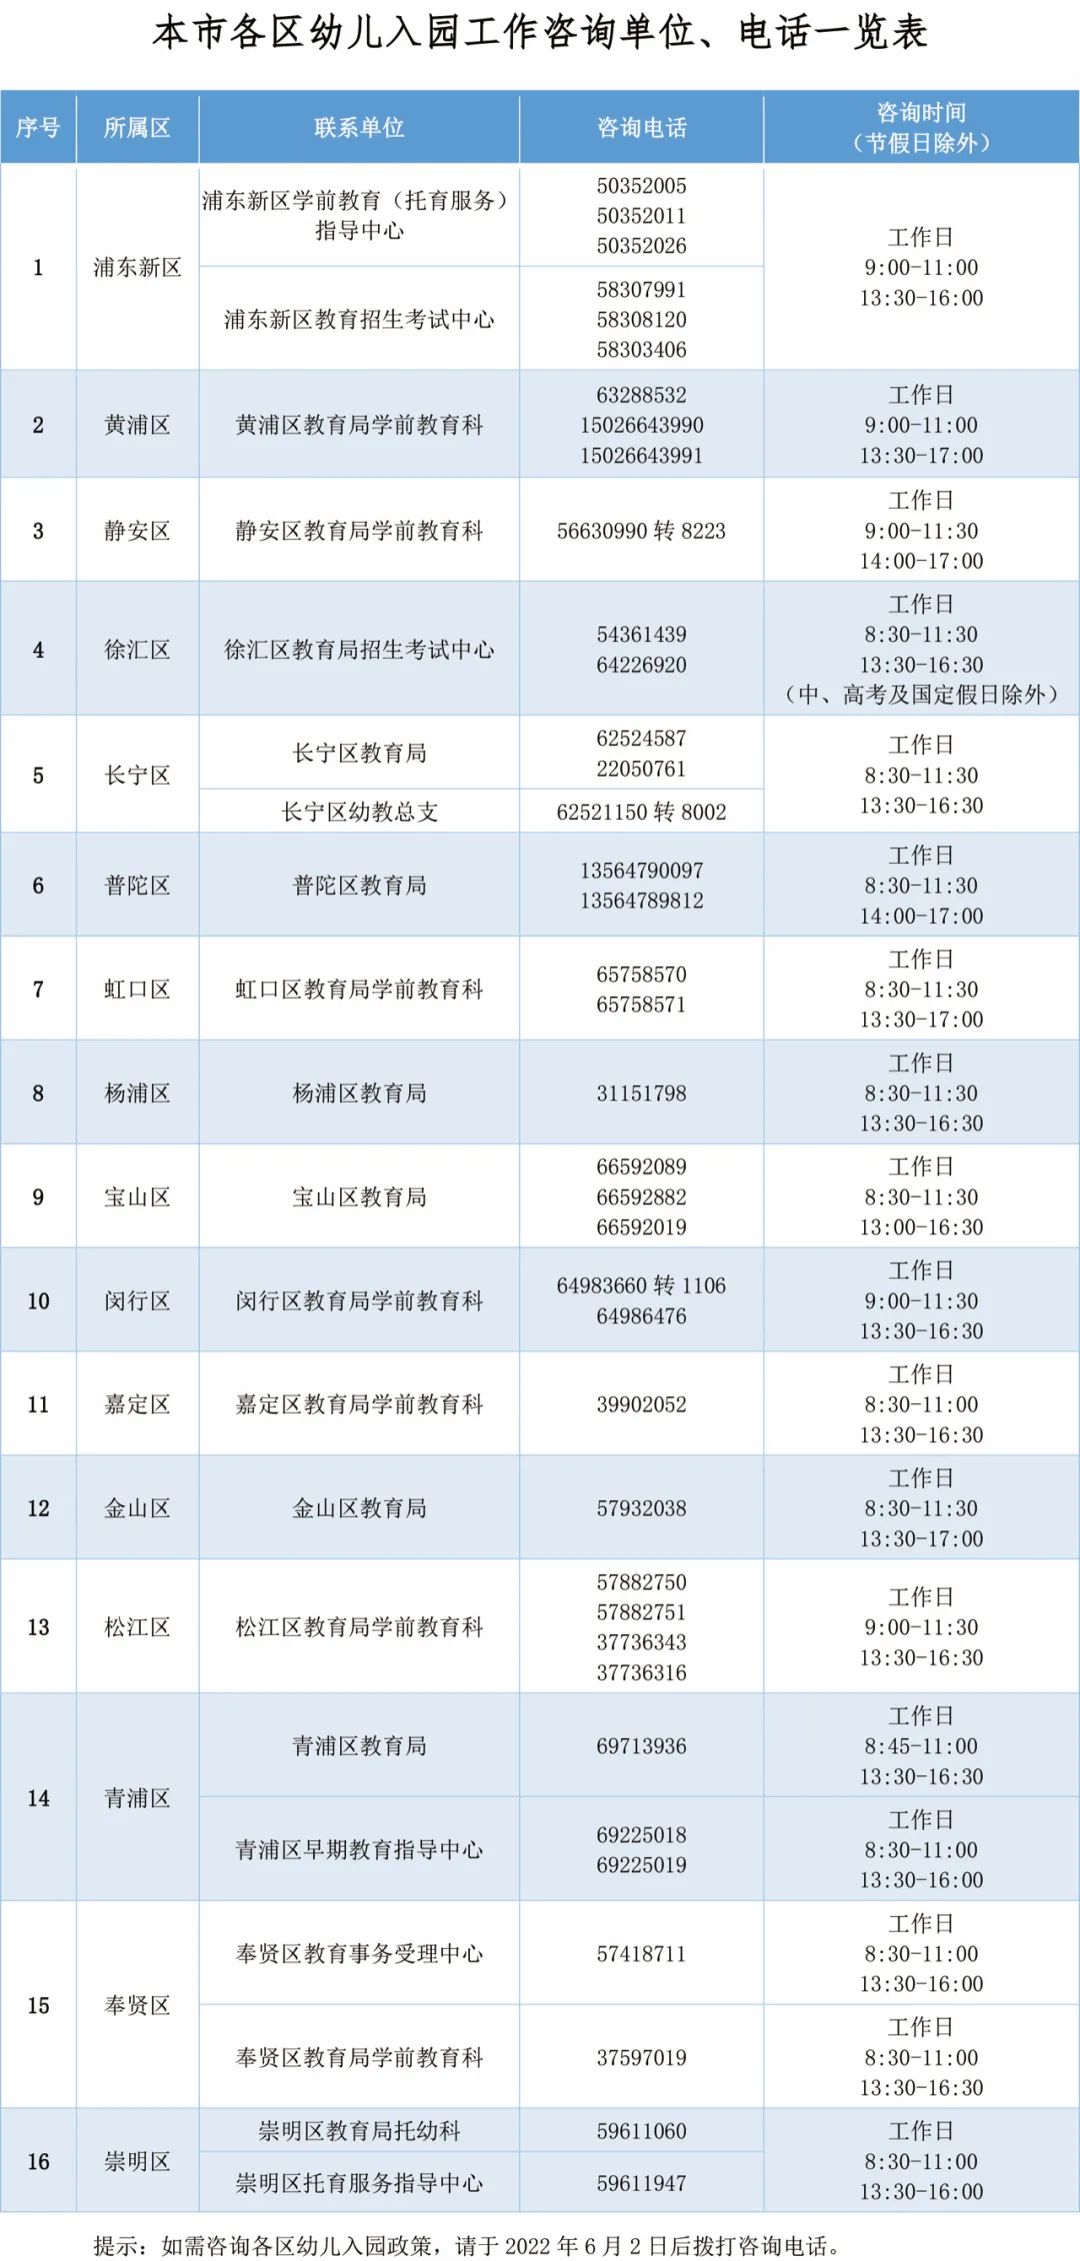 上海居住证积分准备！2022年上海适龄幼儿入园政策，6月9日—6月16日进行网上信息登记